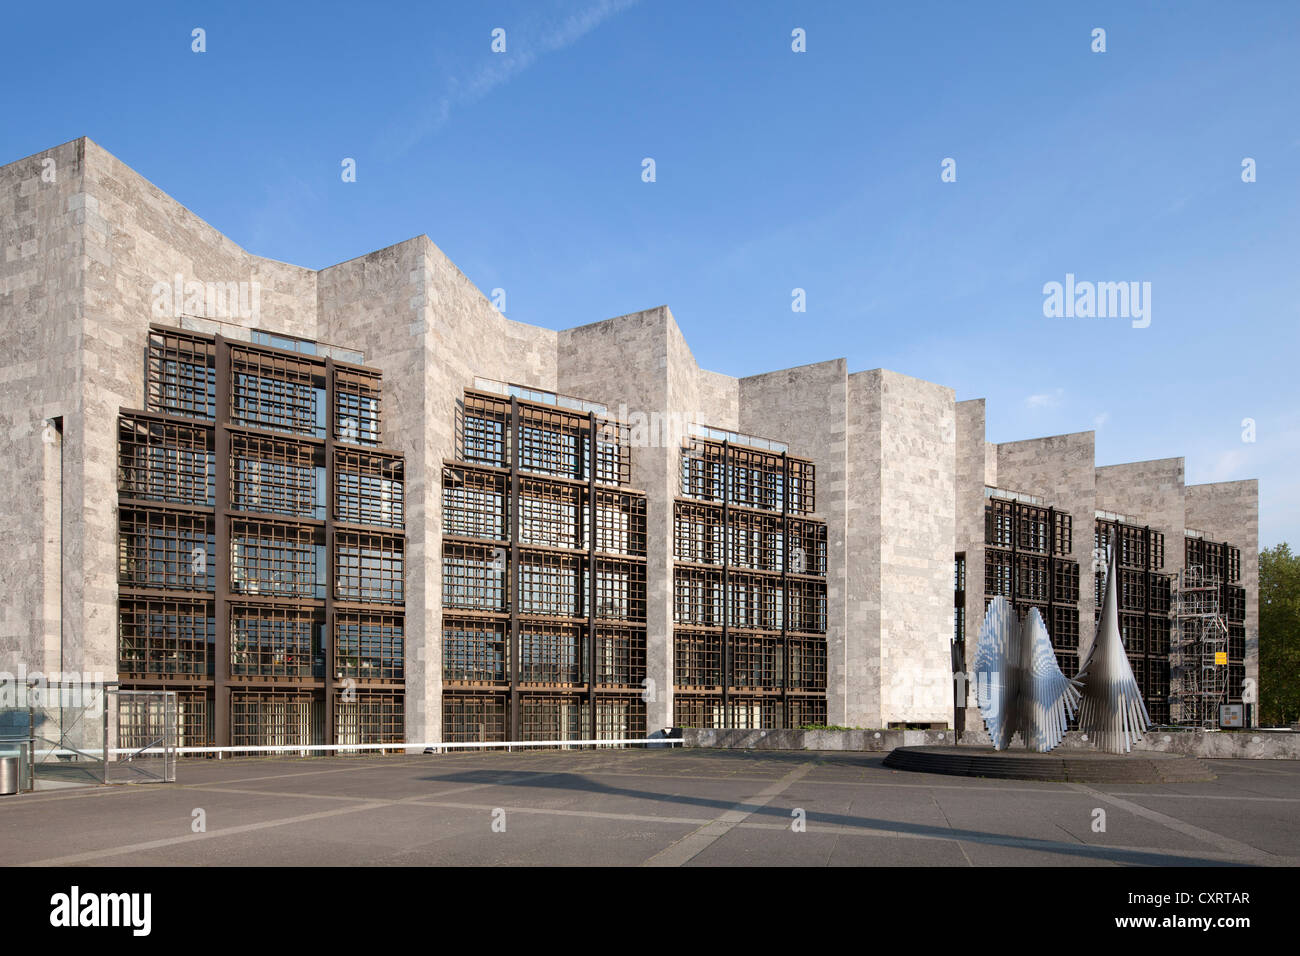 L'Hôtel de ville, le conseil municipal, l'Architecte Arne Jacobsen, Mayence, Rhénanie-Palatinat, Allemagne, Europe, PublicGround Banque D'Images